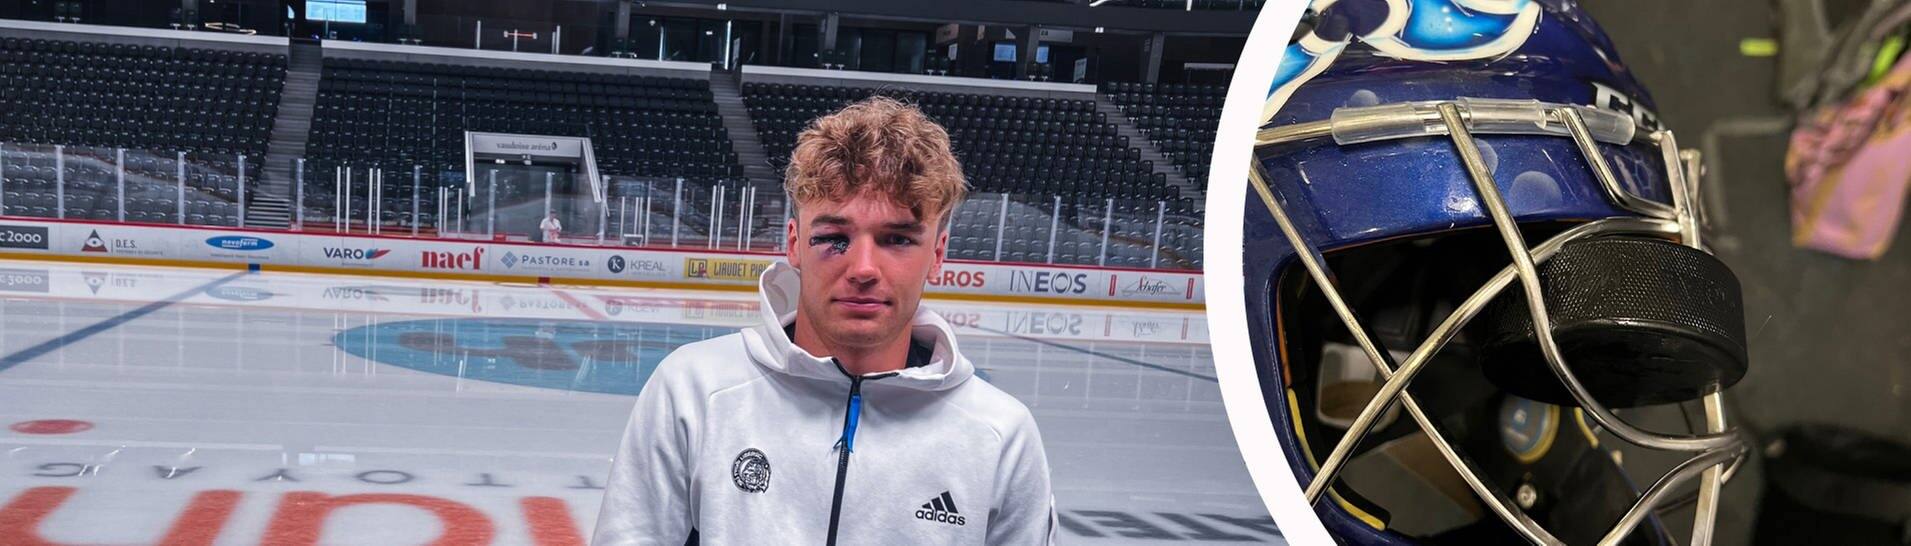 Der Eishockey-Torwart des tschechischen Vereins Bílí Tygri Liberec mit seiner Verletzung am Auge. Bei einem Spiel traf ihn ein Puck am Auge.  (Foto: Screenshot Twitter/ Bílí Tygri Liberec)